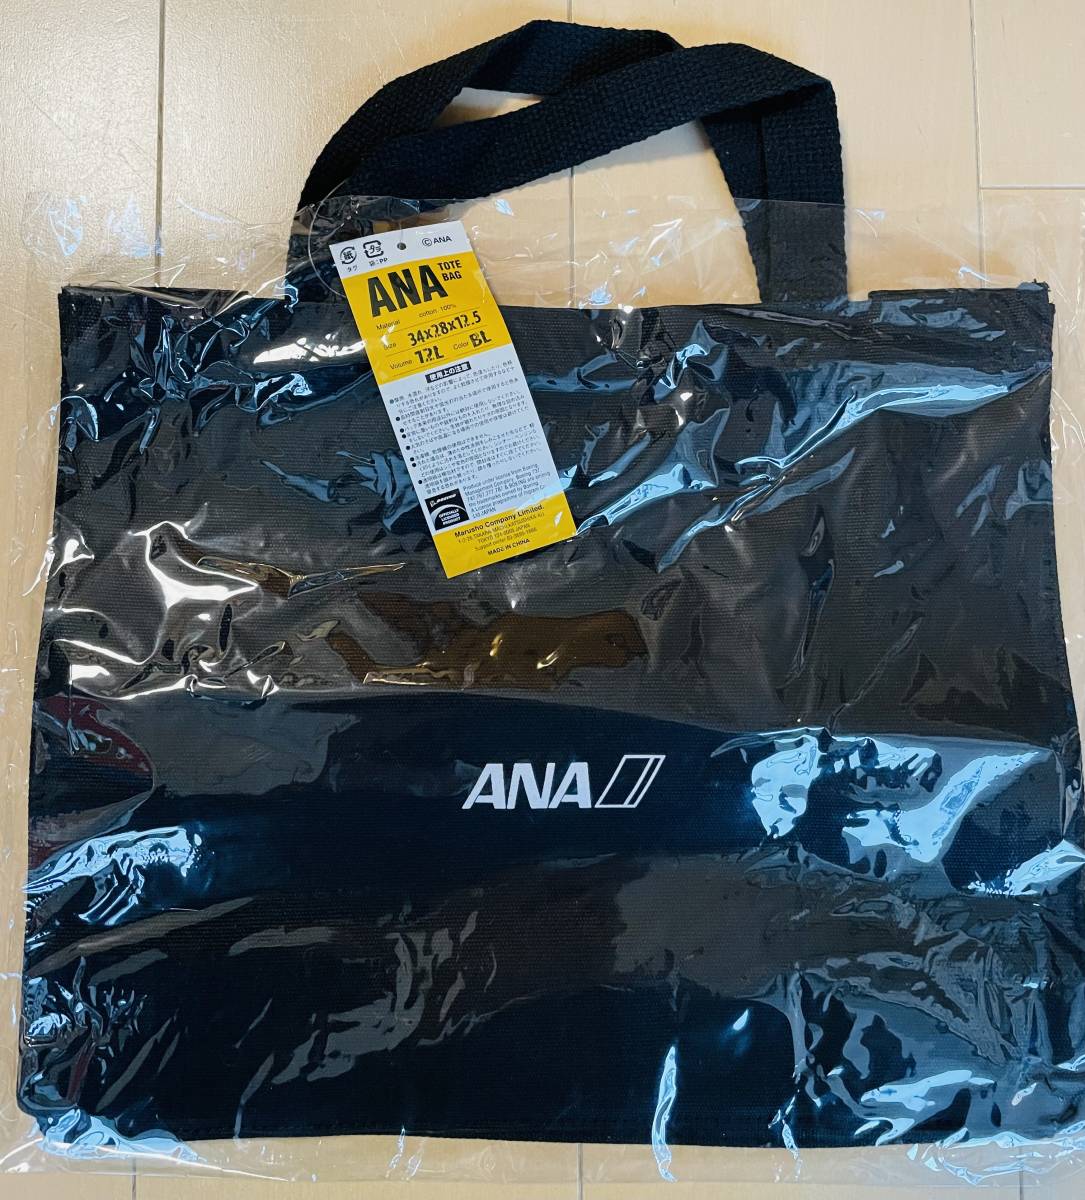 ANA большая сумка ANAxbo- крыло 787 сотрудничество дизайн ( чёрный ) * не использовался * 787 Dream подкладка 